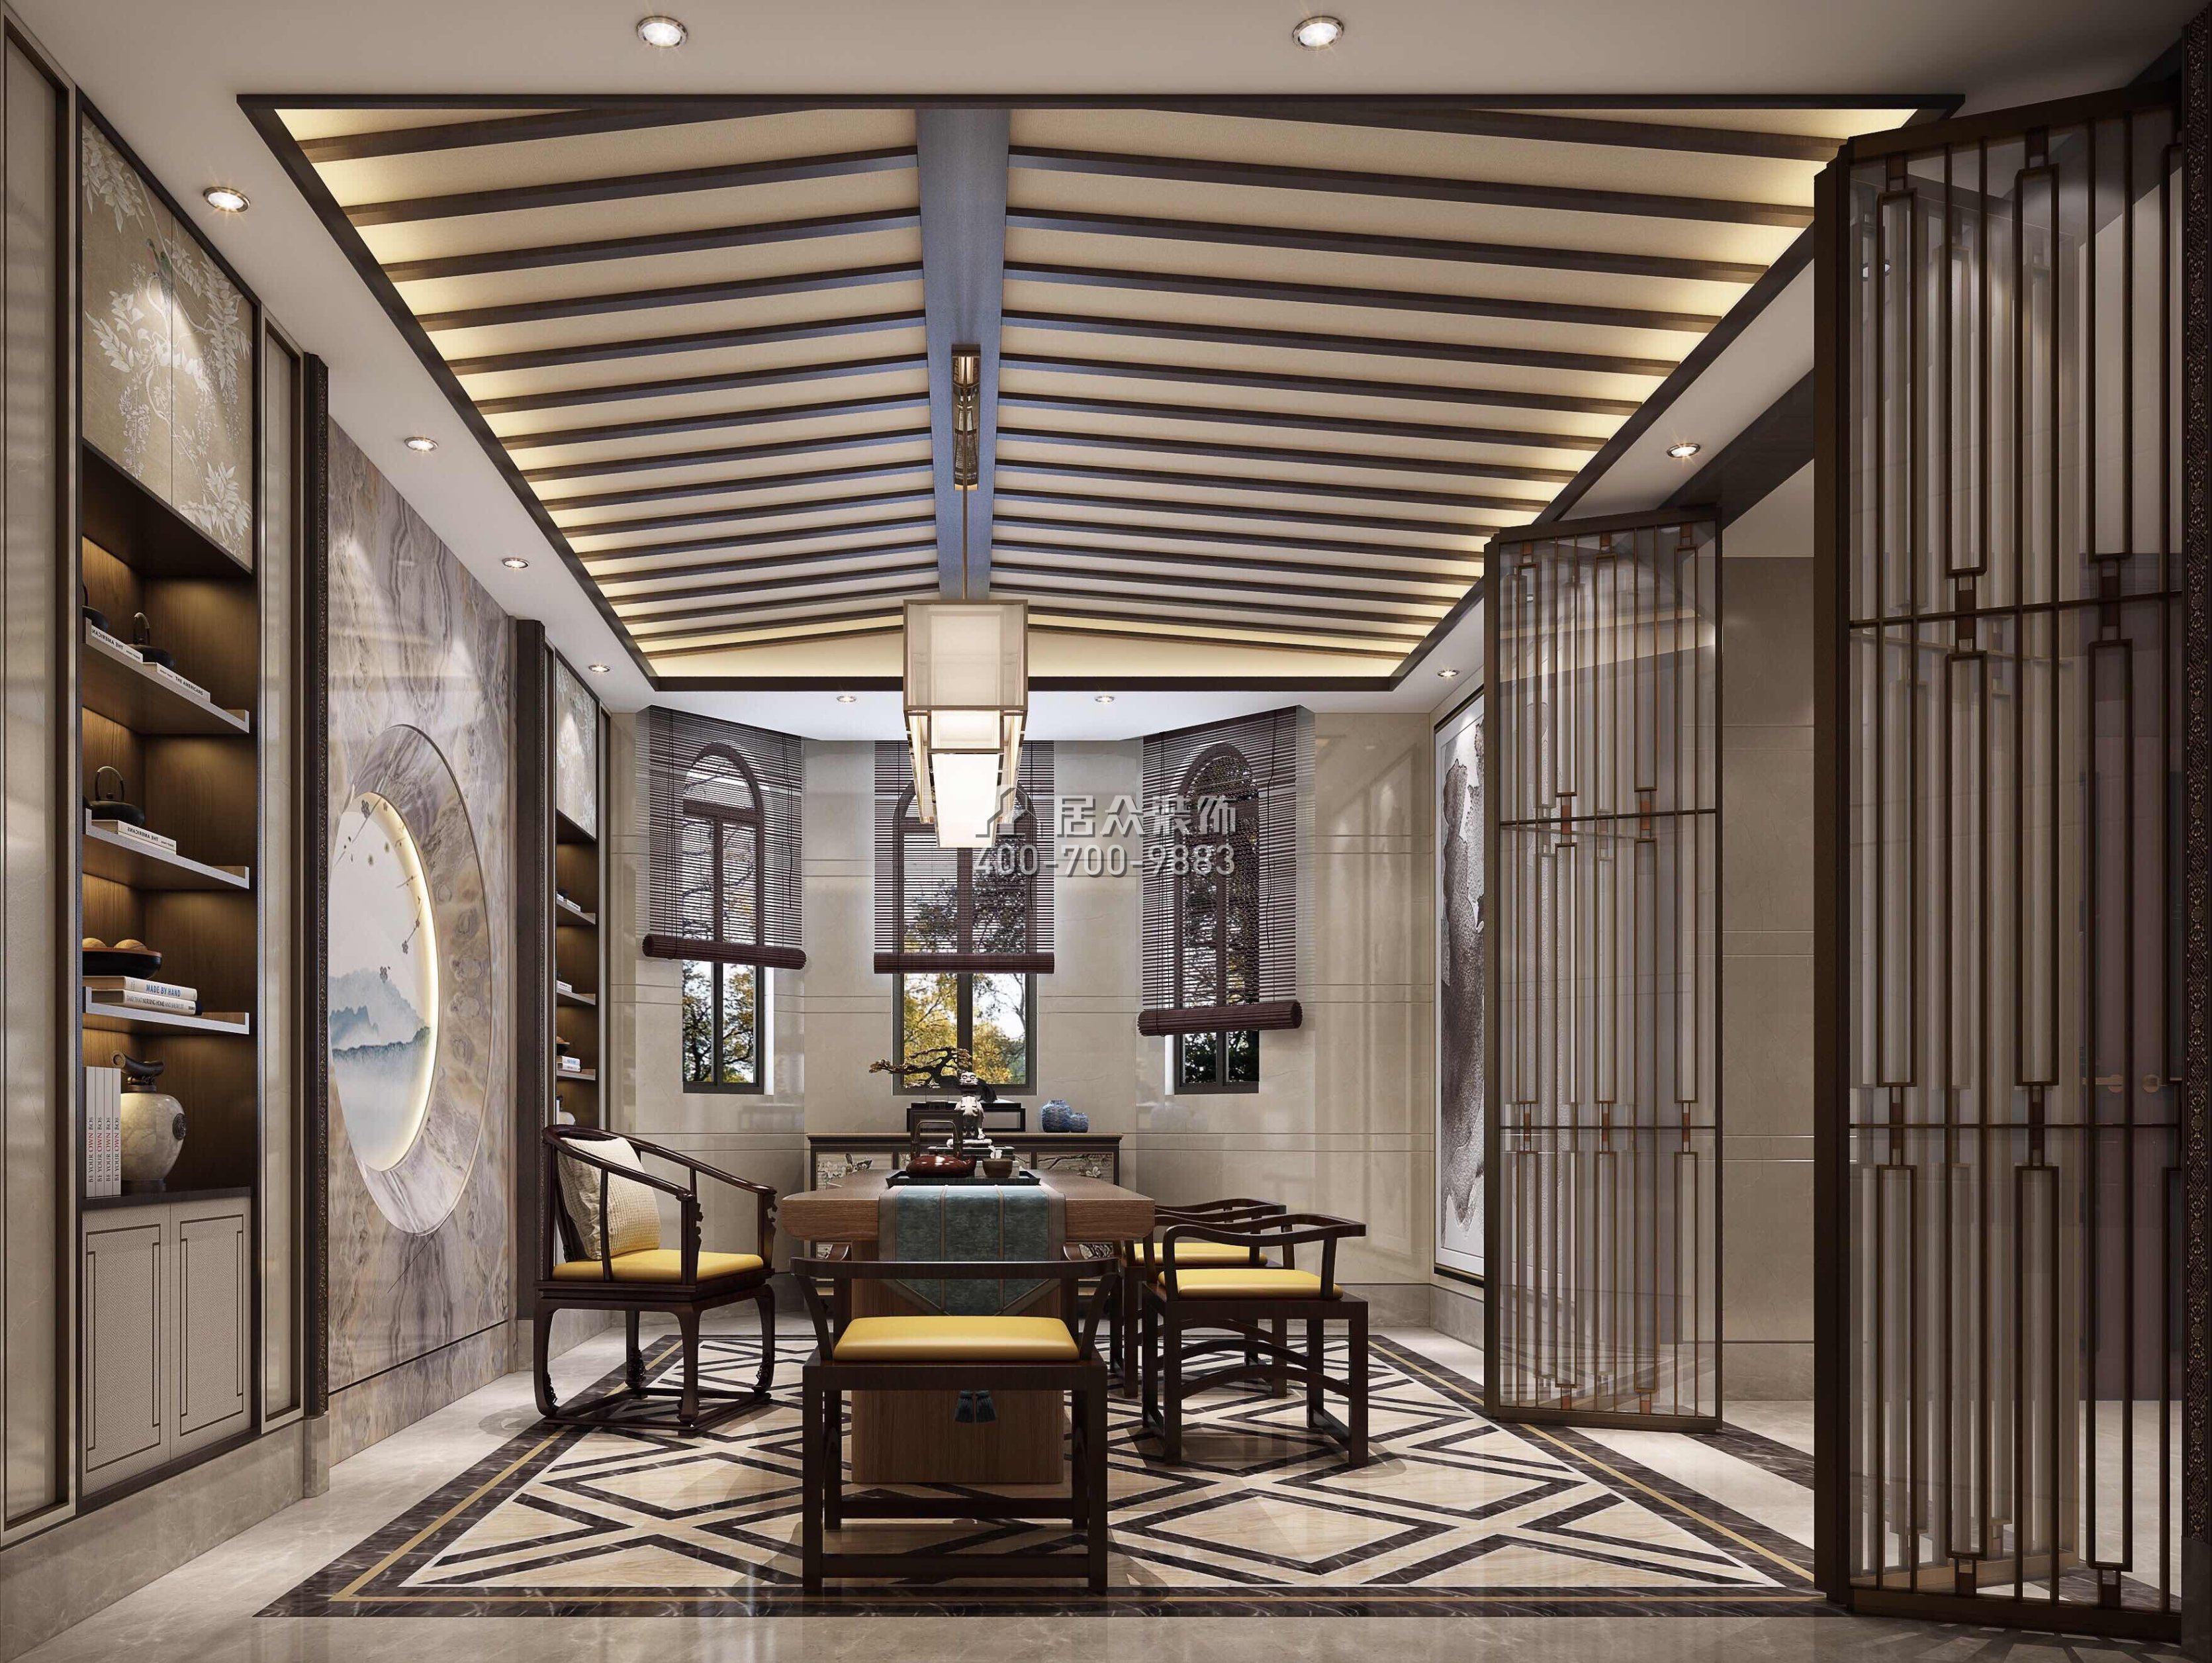 江畔豪庭500平方米中式风格别墅户型茶室装修效果图